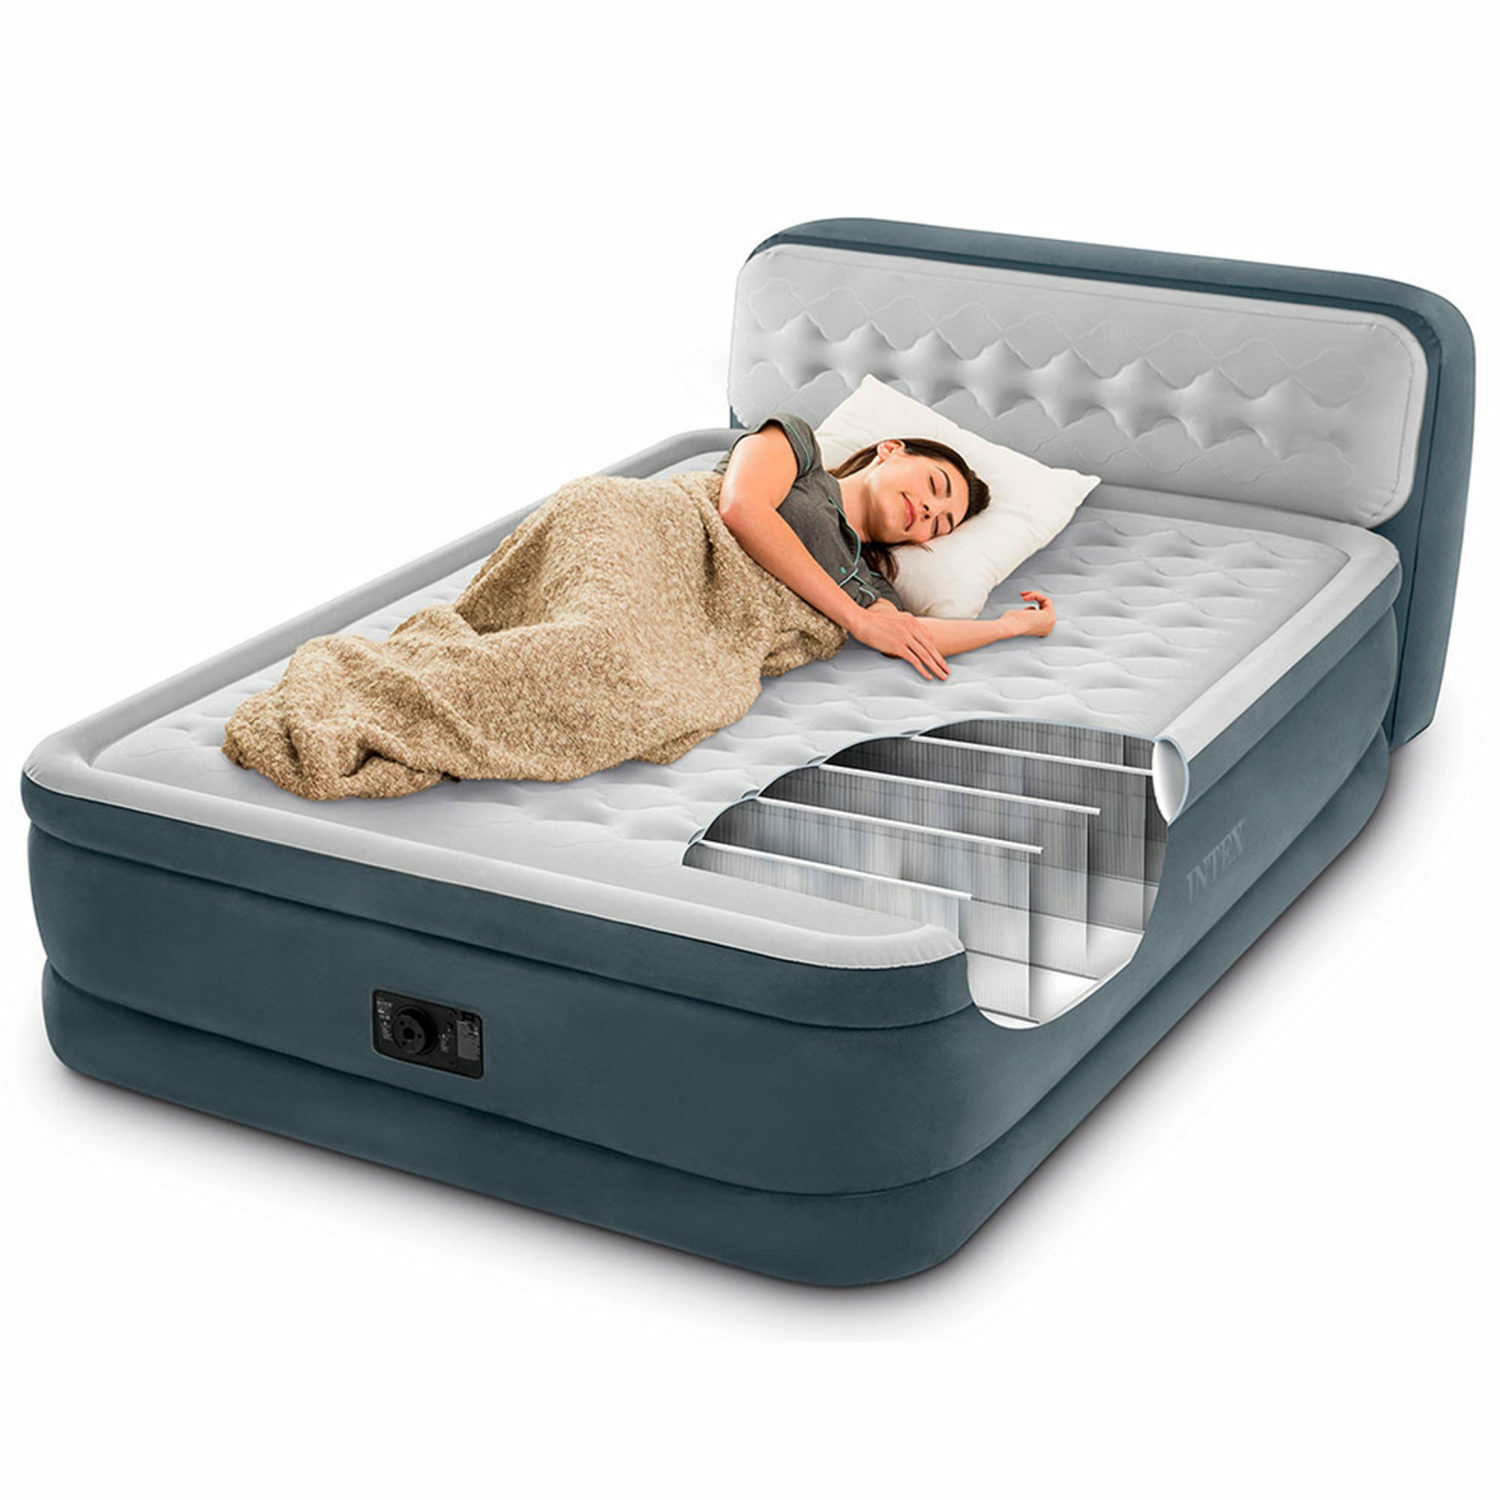 Надувной матрас INTEX кровать с высоким подголовником и встроенным насосом 152х236х86 см - фото 5